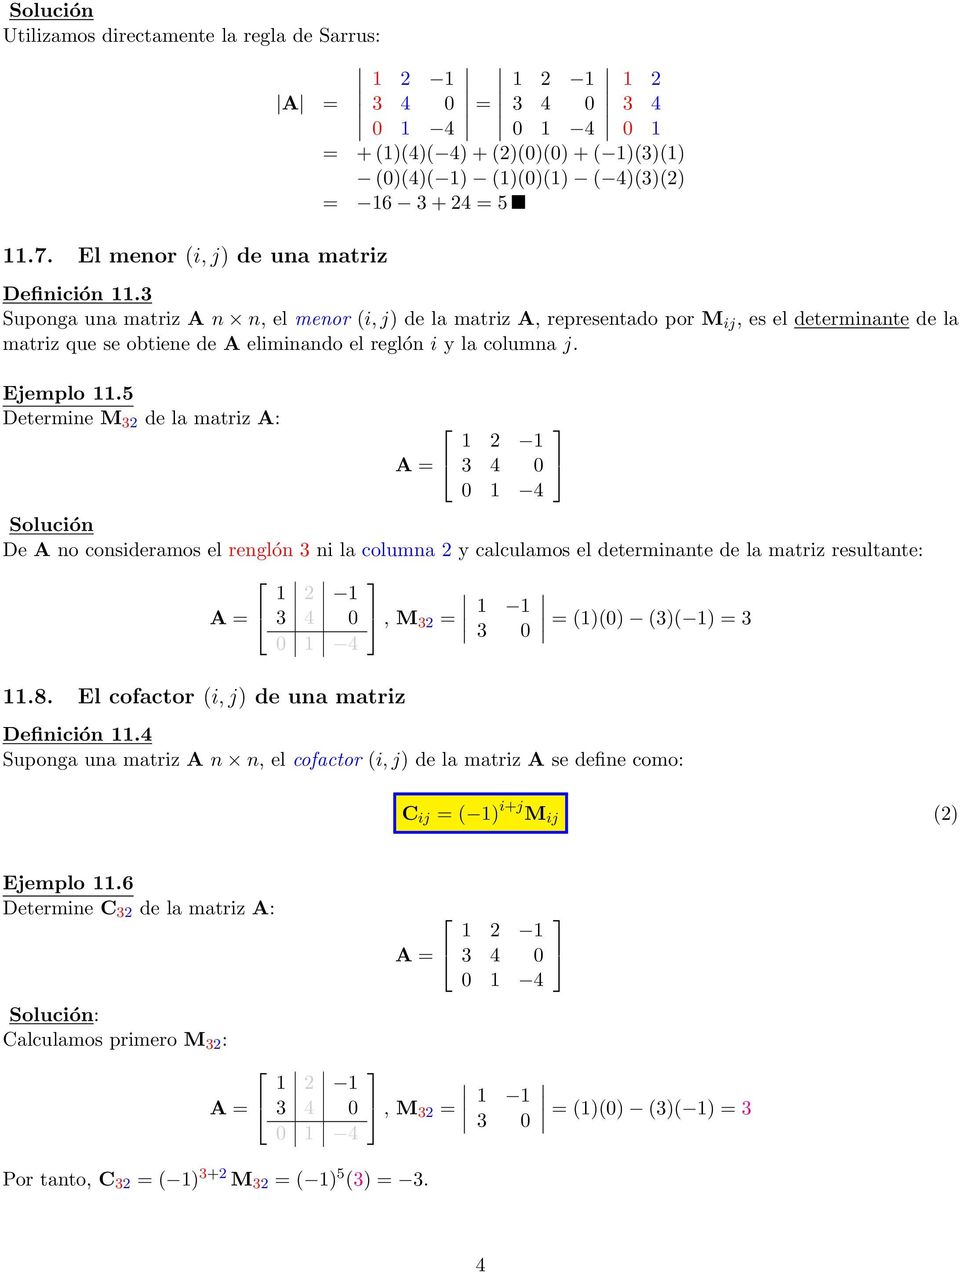 5 Determine M 32 de la matriz A: De A no consideramos el renglón 3 ni la columna 2 y calculamos el determinante de la matriz resultante: 11.8.